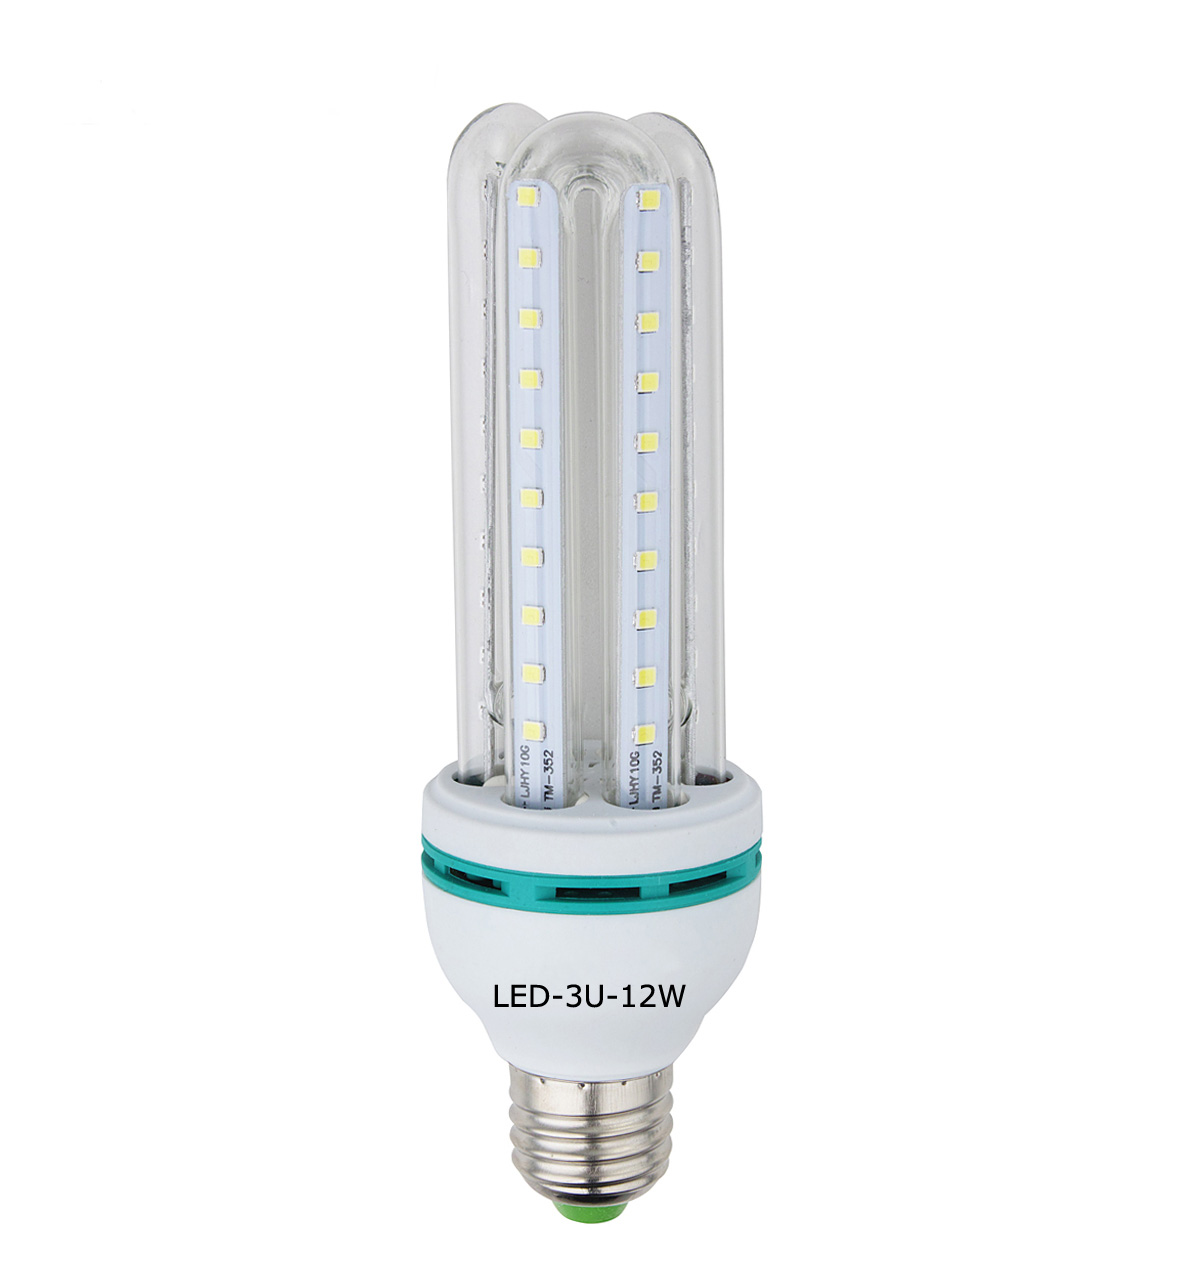 LED 3U 12W lamp